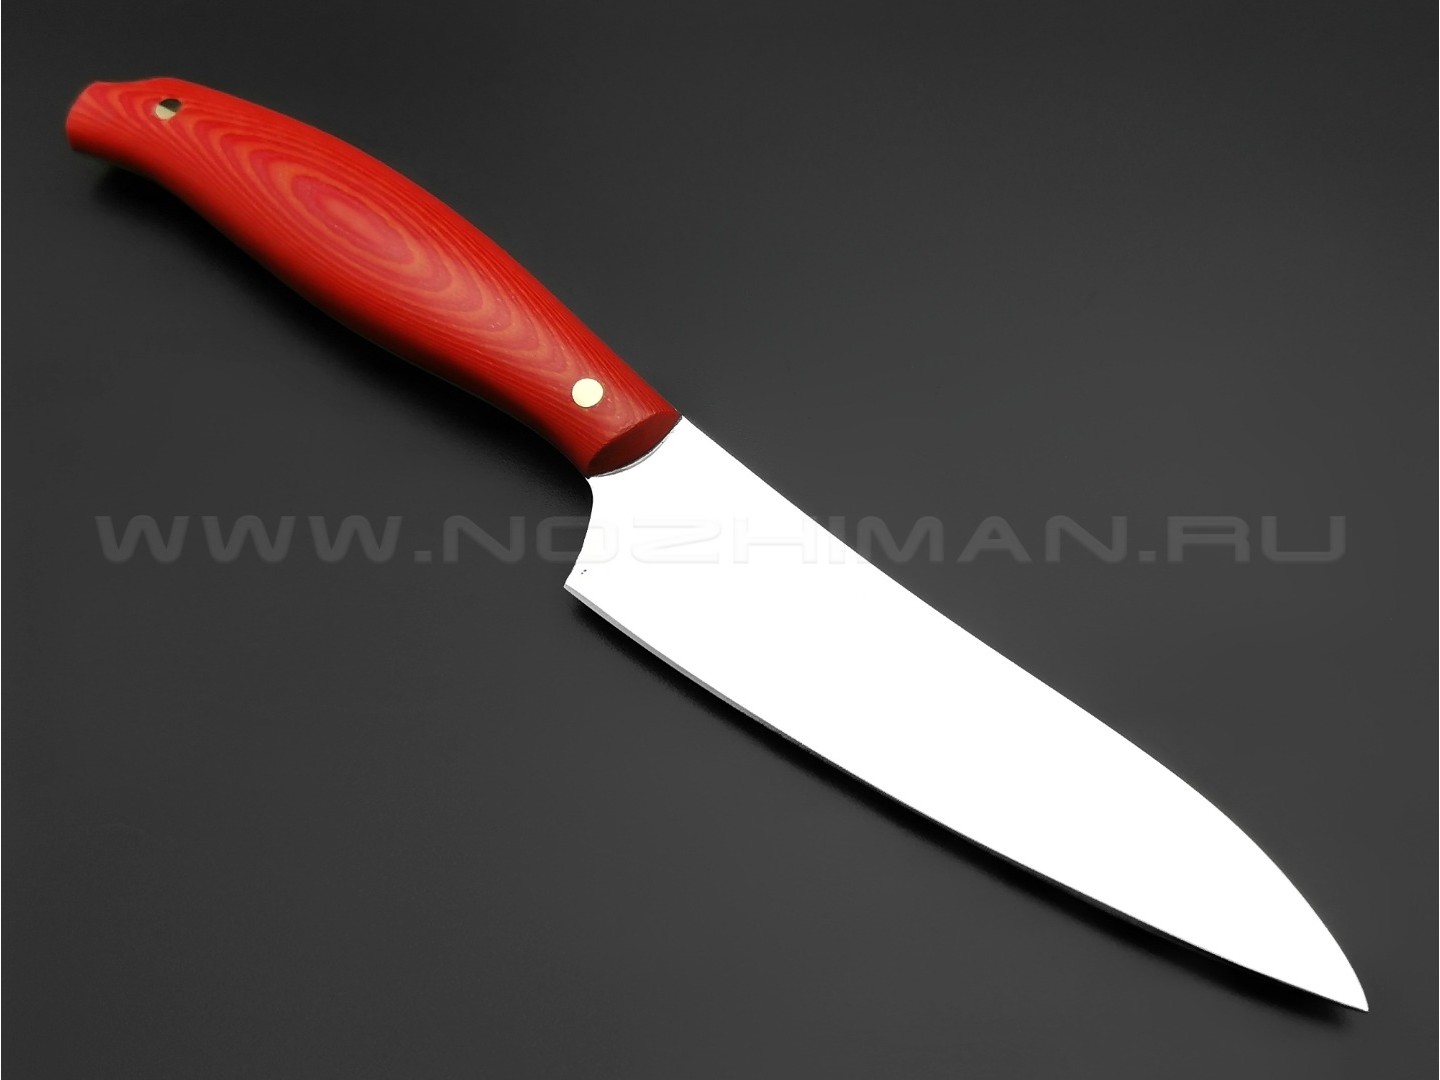 Кухонный нож Овощной №2, сталь N690, рукоять G10 red & orange (Товарищество Завьялова)